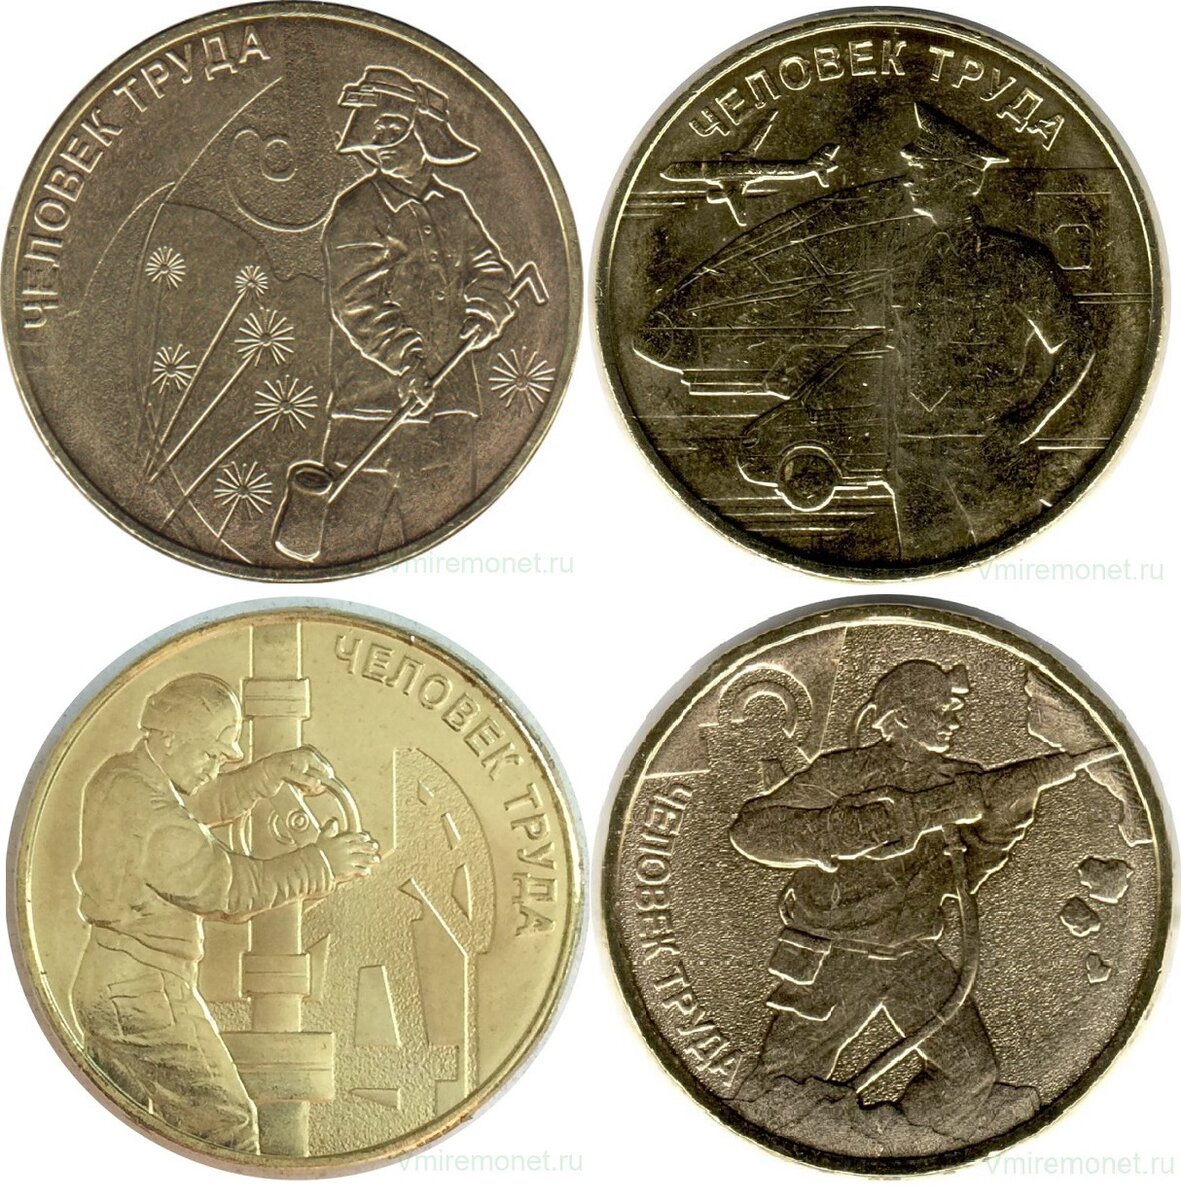 Монеты серии "Человек труда" (2020-2022 гг)